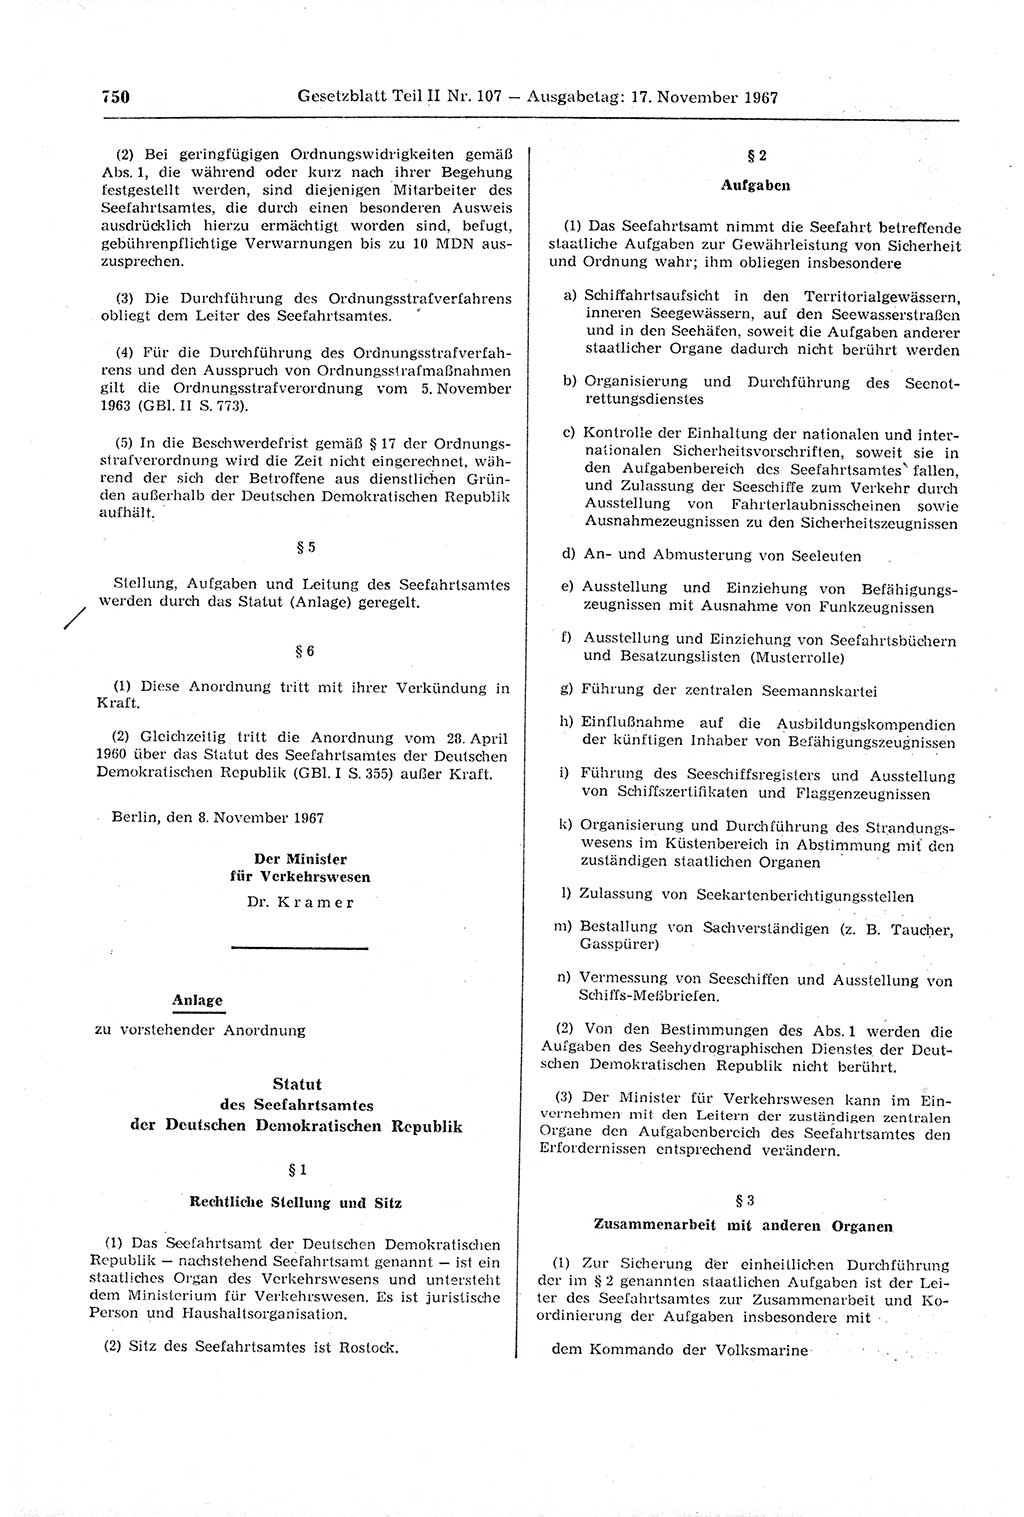 Gesetzblatt (GBl.) der Deutschen Demokratischen Republik (DDR) Teil ⅠⅠ 1967, Seite 750 (GBl. DDR ⅠⅠ 1967, S. 750)